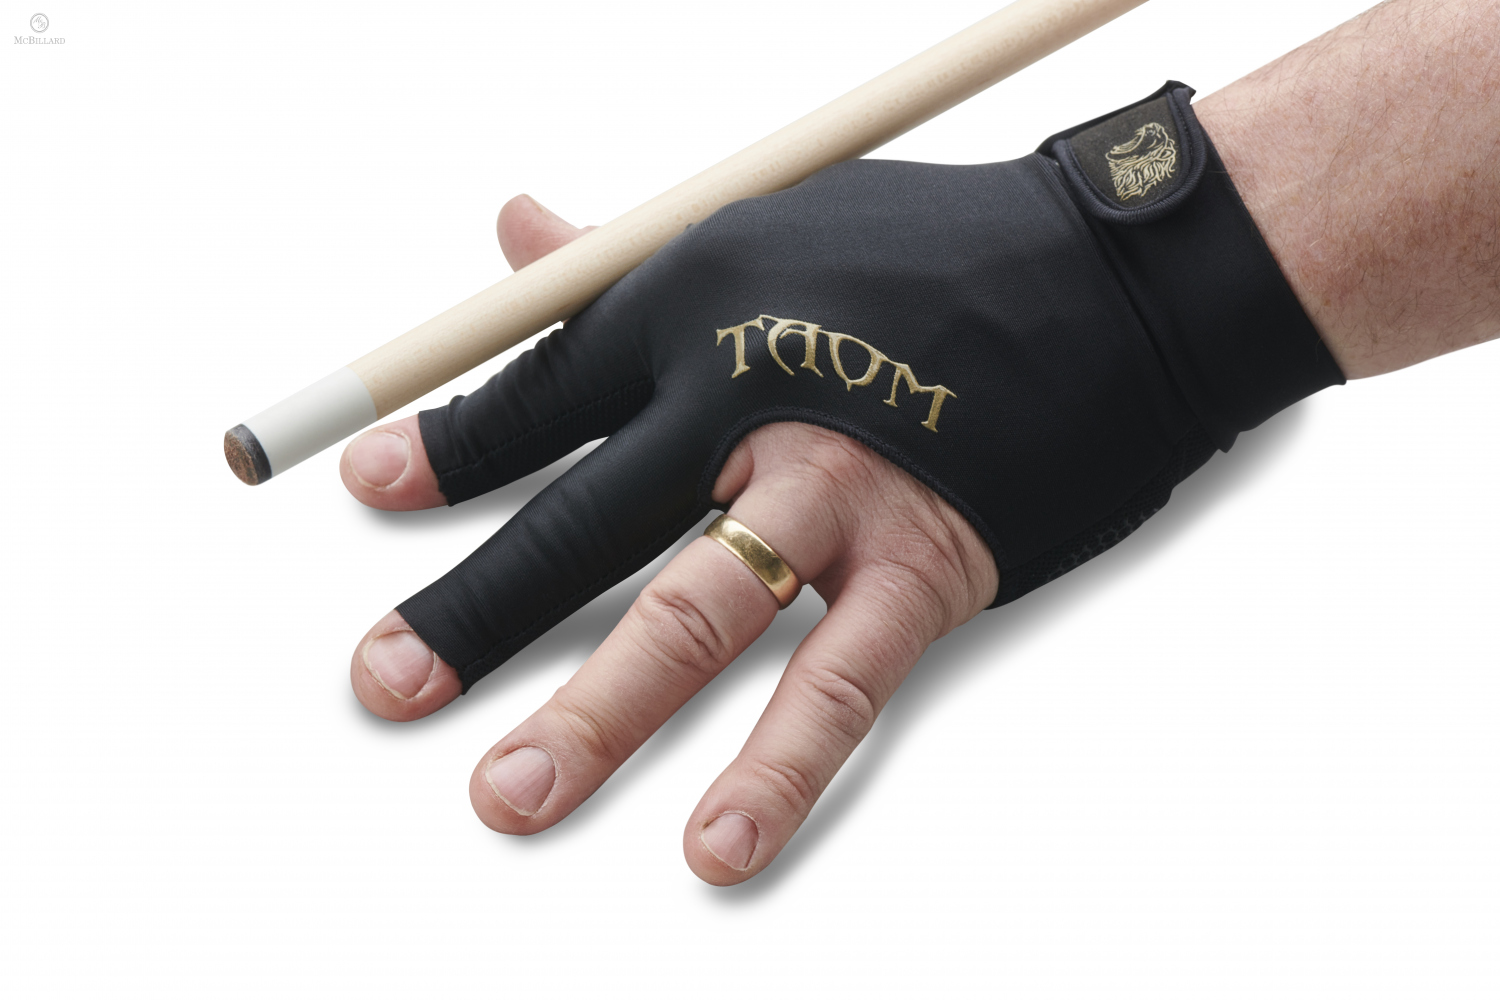 Billiard Glove TAOM - 3-finger - For right hand - Size L